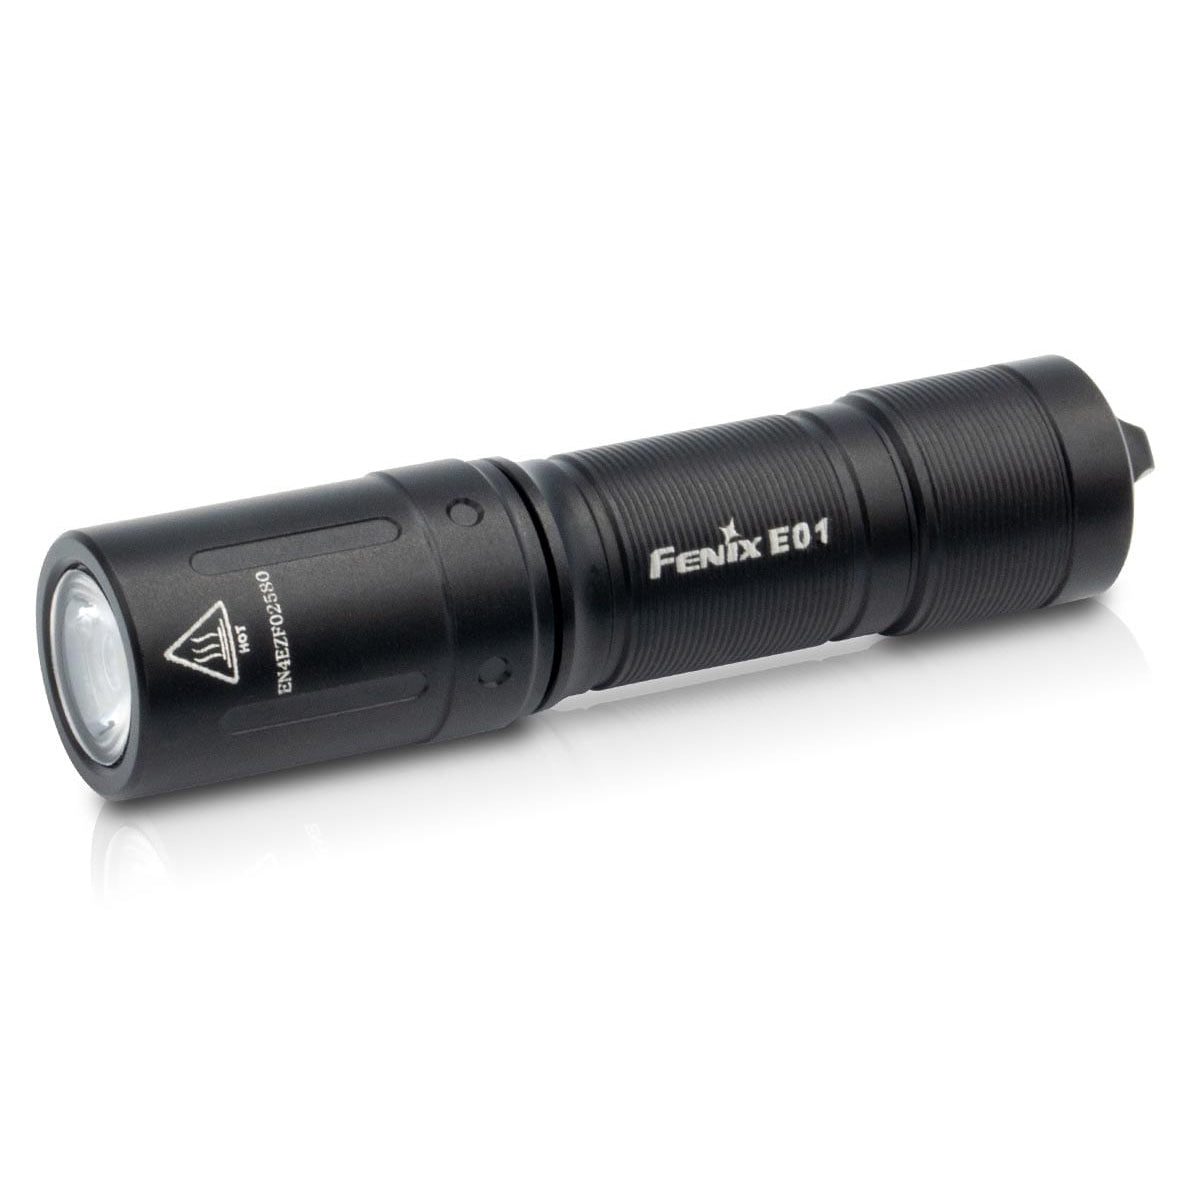 Fenix E01 V2.0 Mini Keychain Flashlight